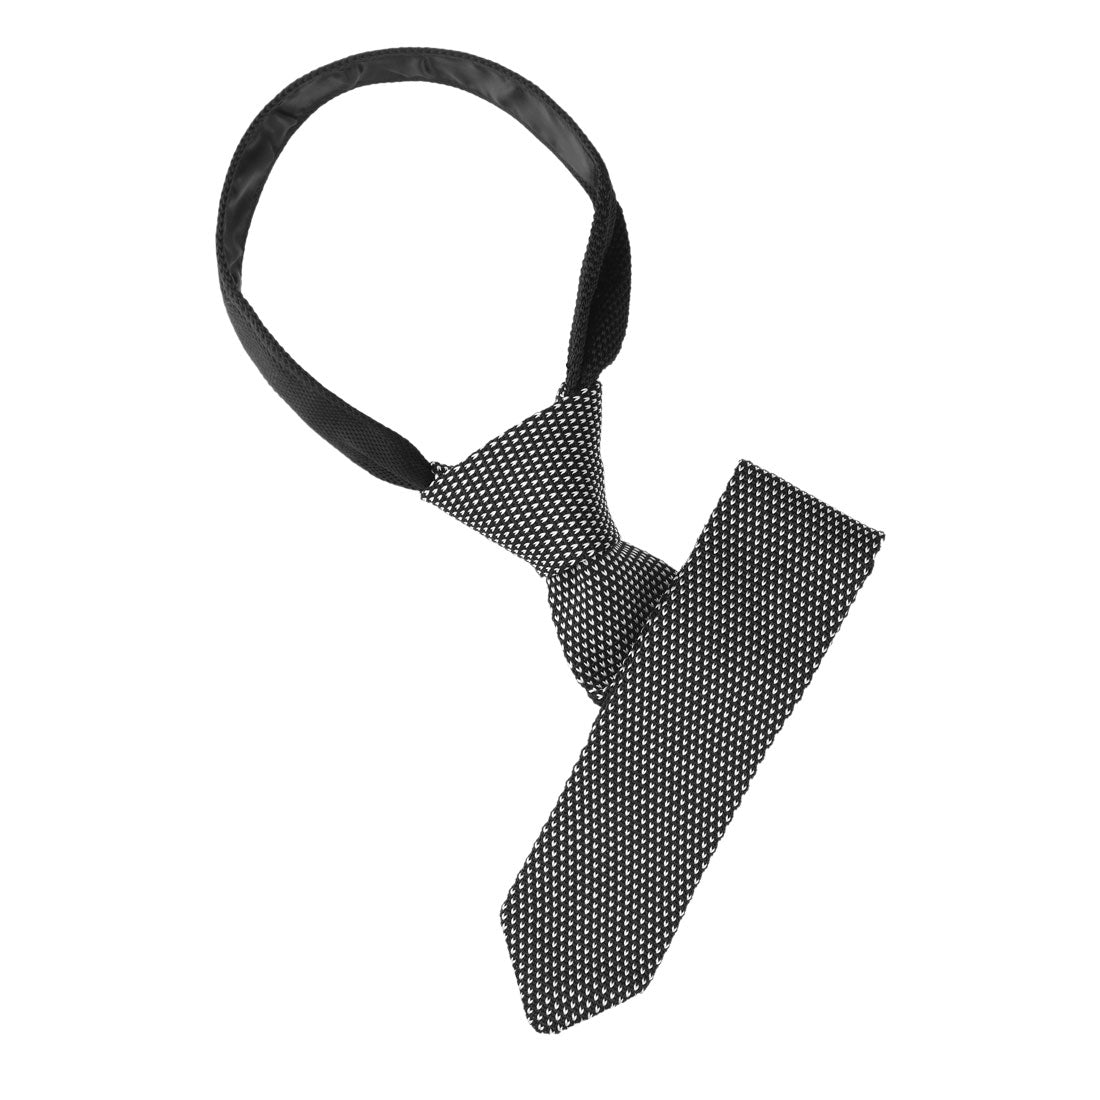 Allegra K Knitted Neckties for Men Regular Tie Heart Print Ties